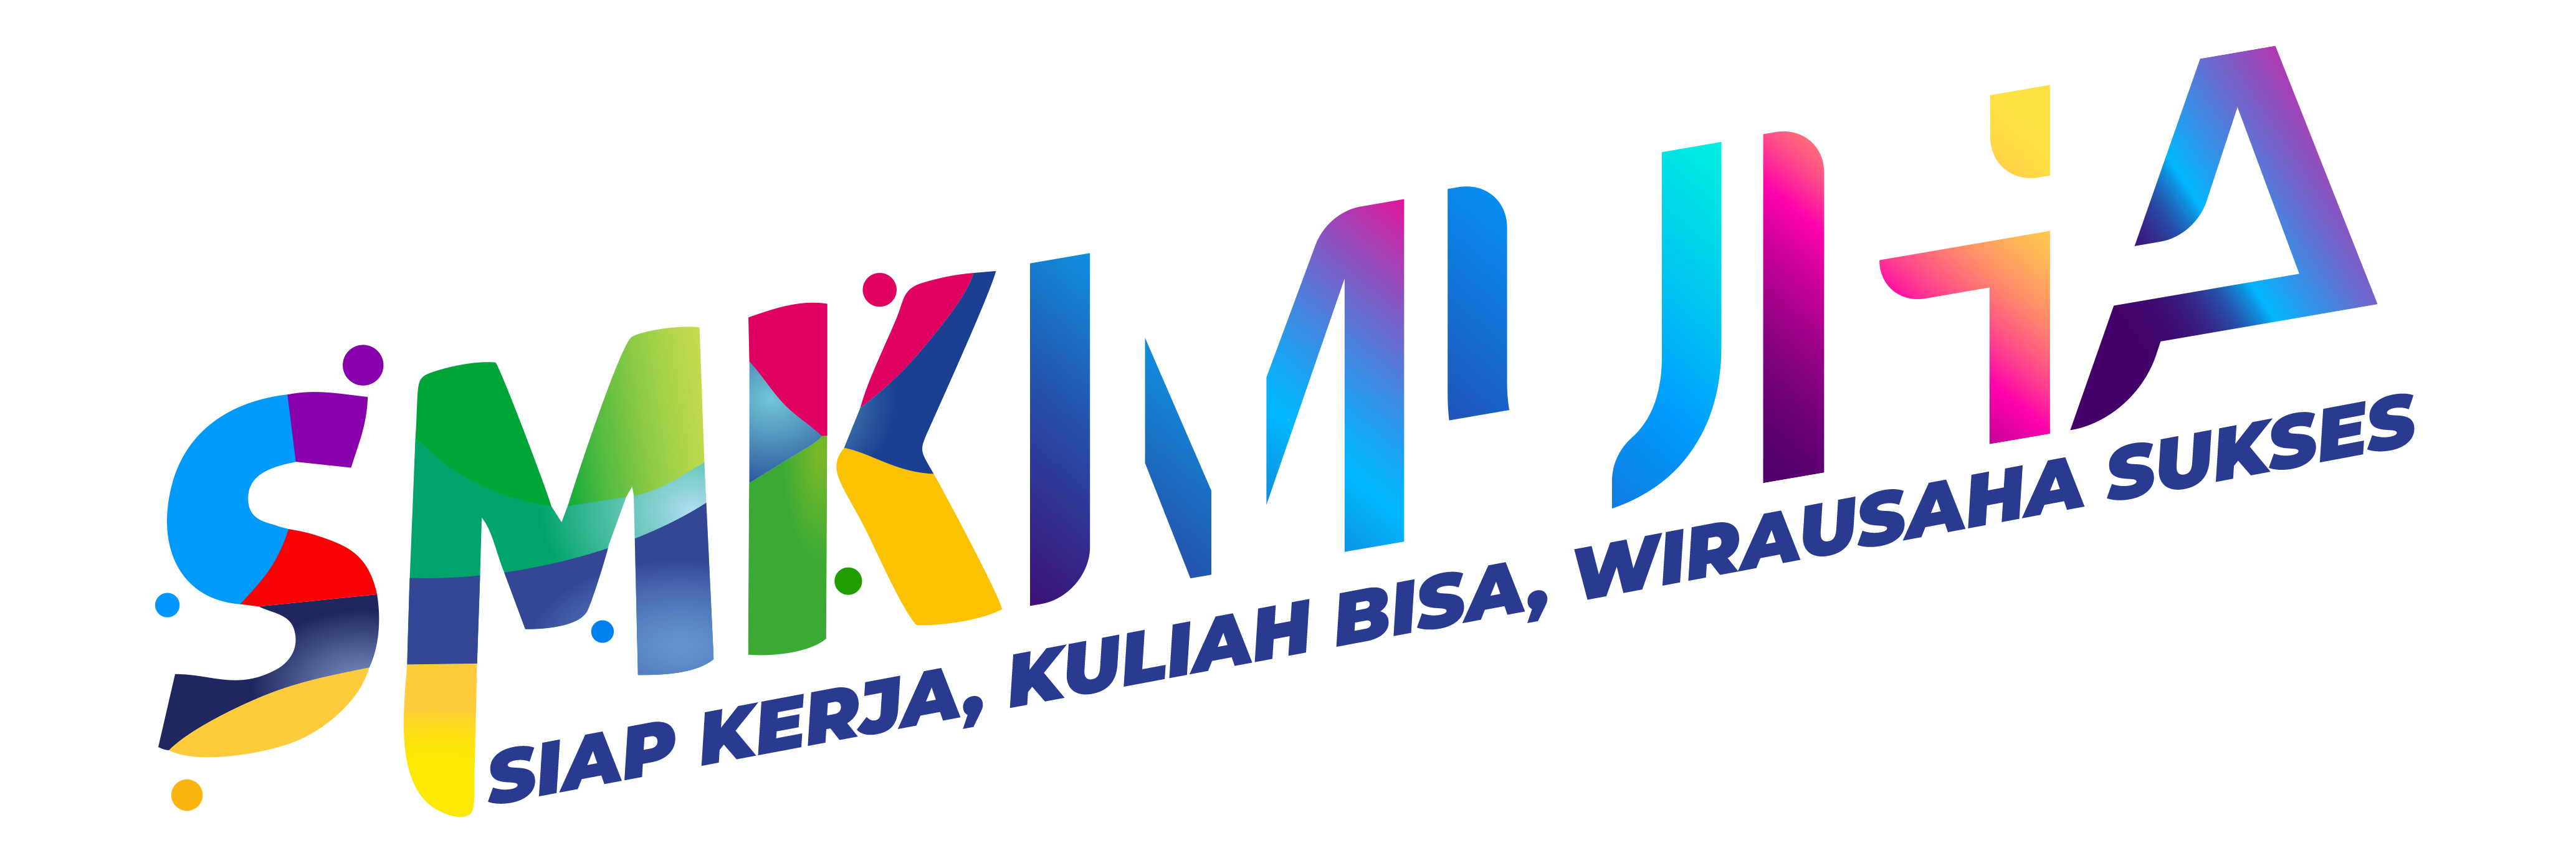 SMK Muhammadiyah 4 Jakarta | Siap Kerja, Kuliah Bisa, Wirausaha Sukses